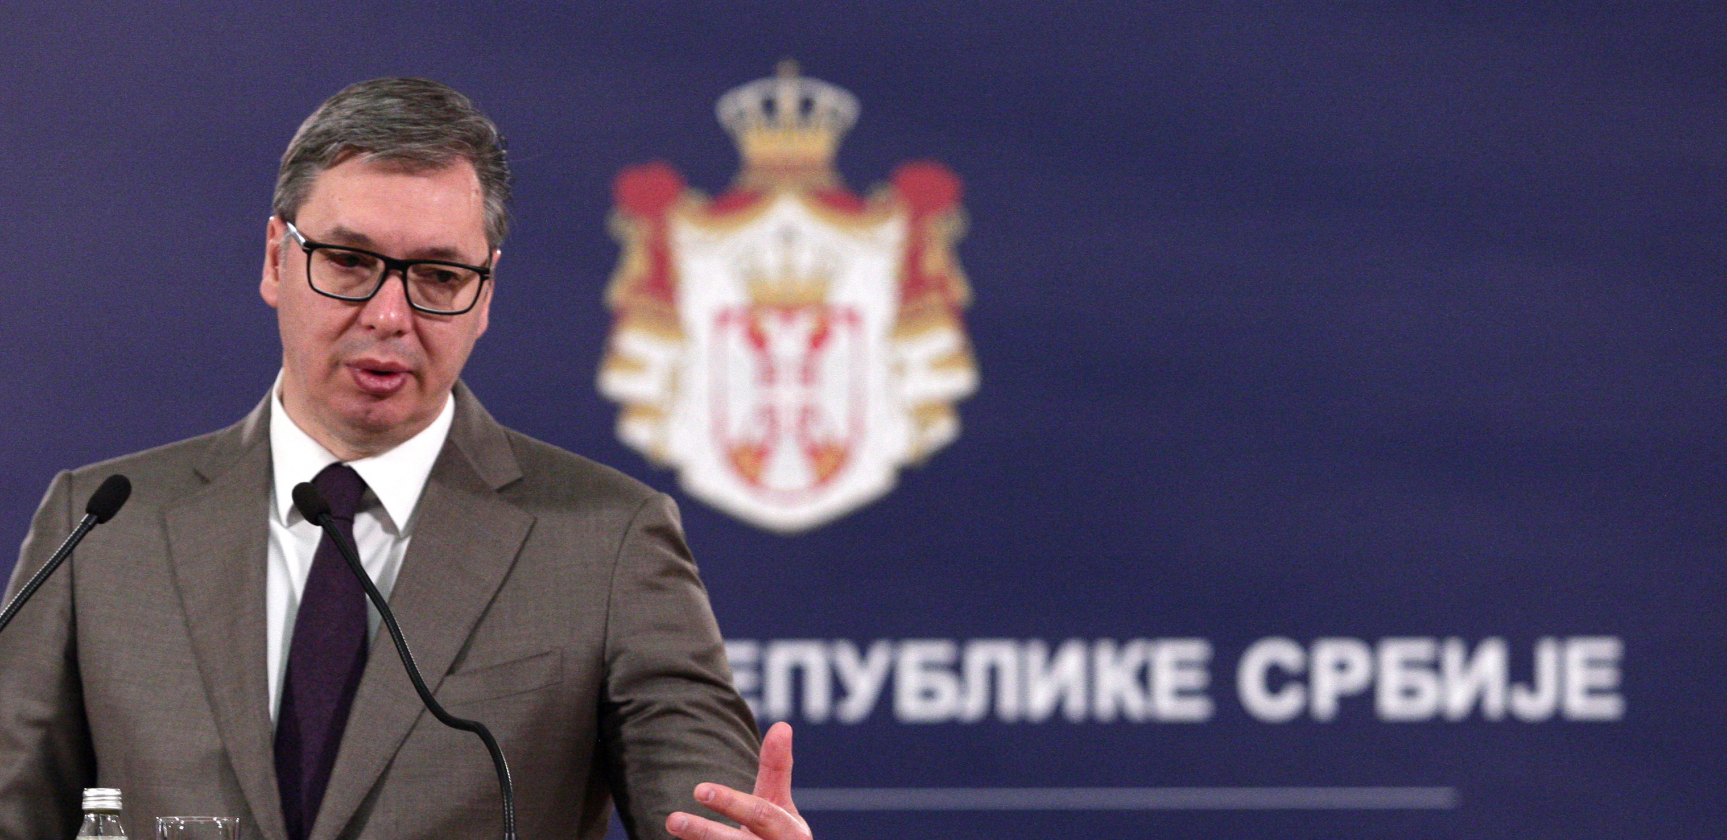 RAZGOVORI O NOVOJ VLADI U MAJU ILI JUNU Vučić: Pravnici će odlučiti, važno što pre razgovarati i rešavati probleme